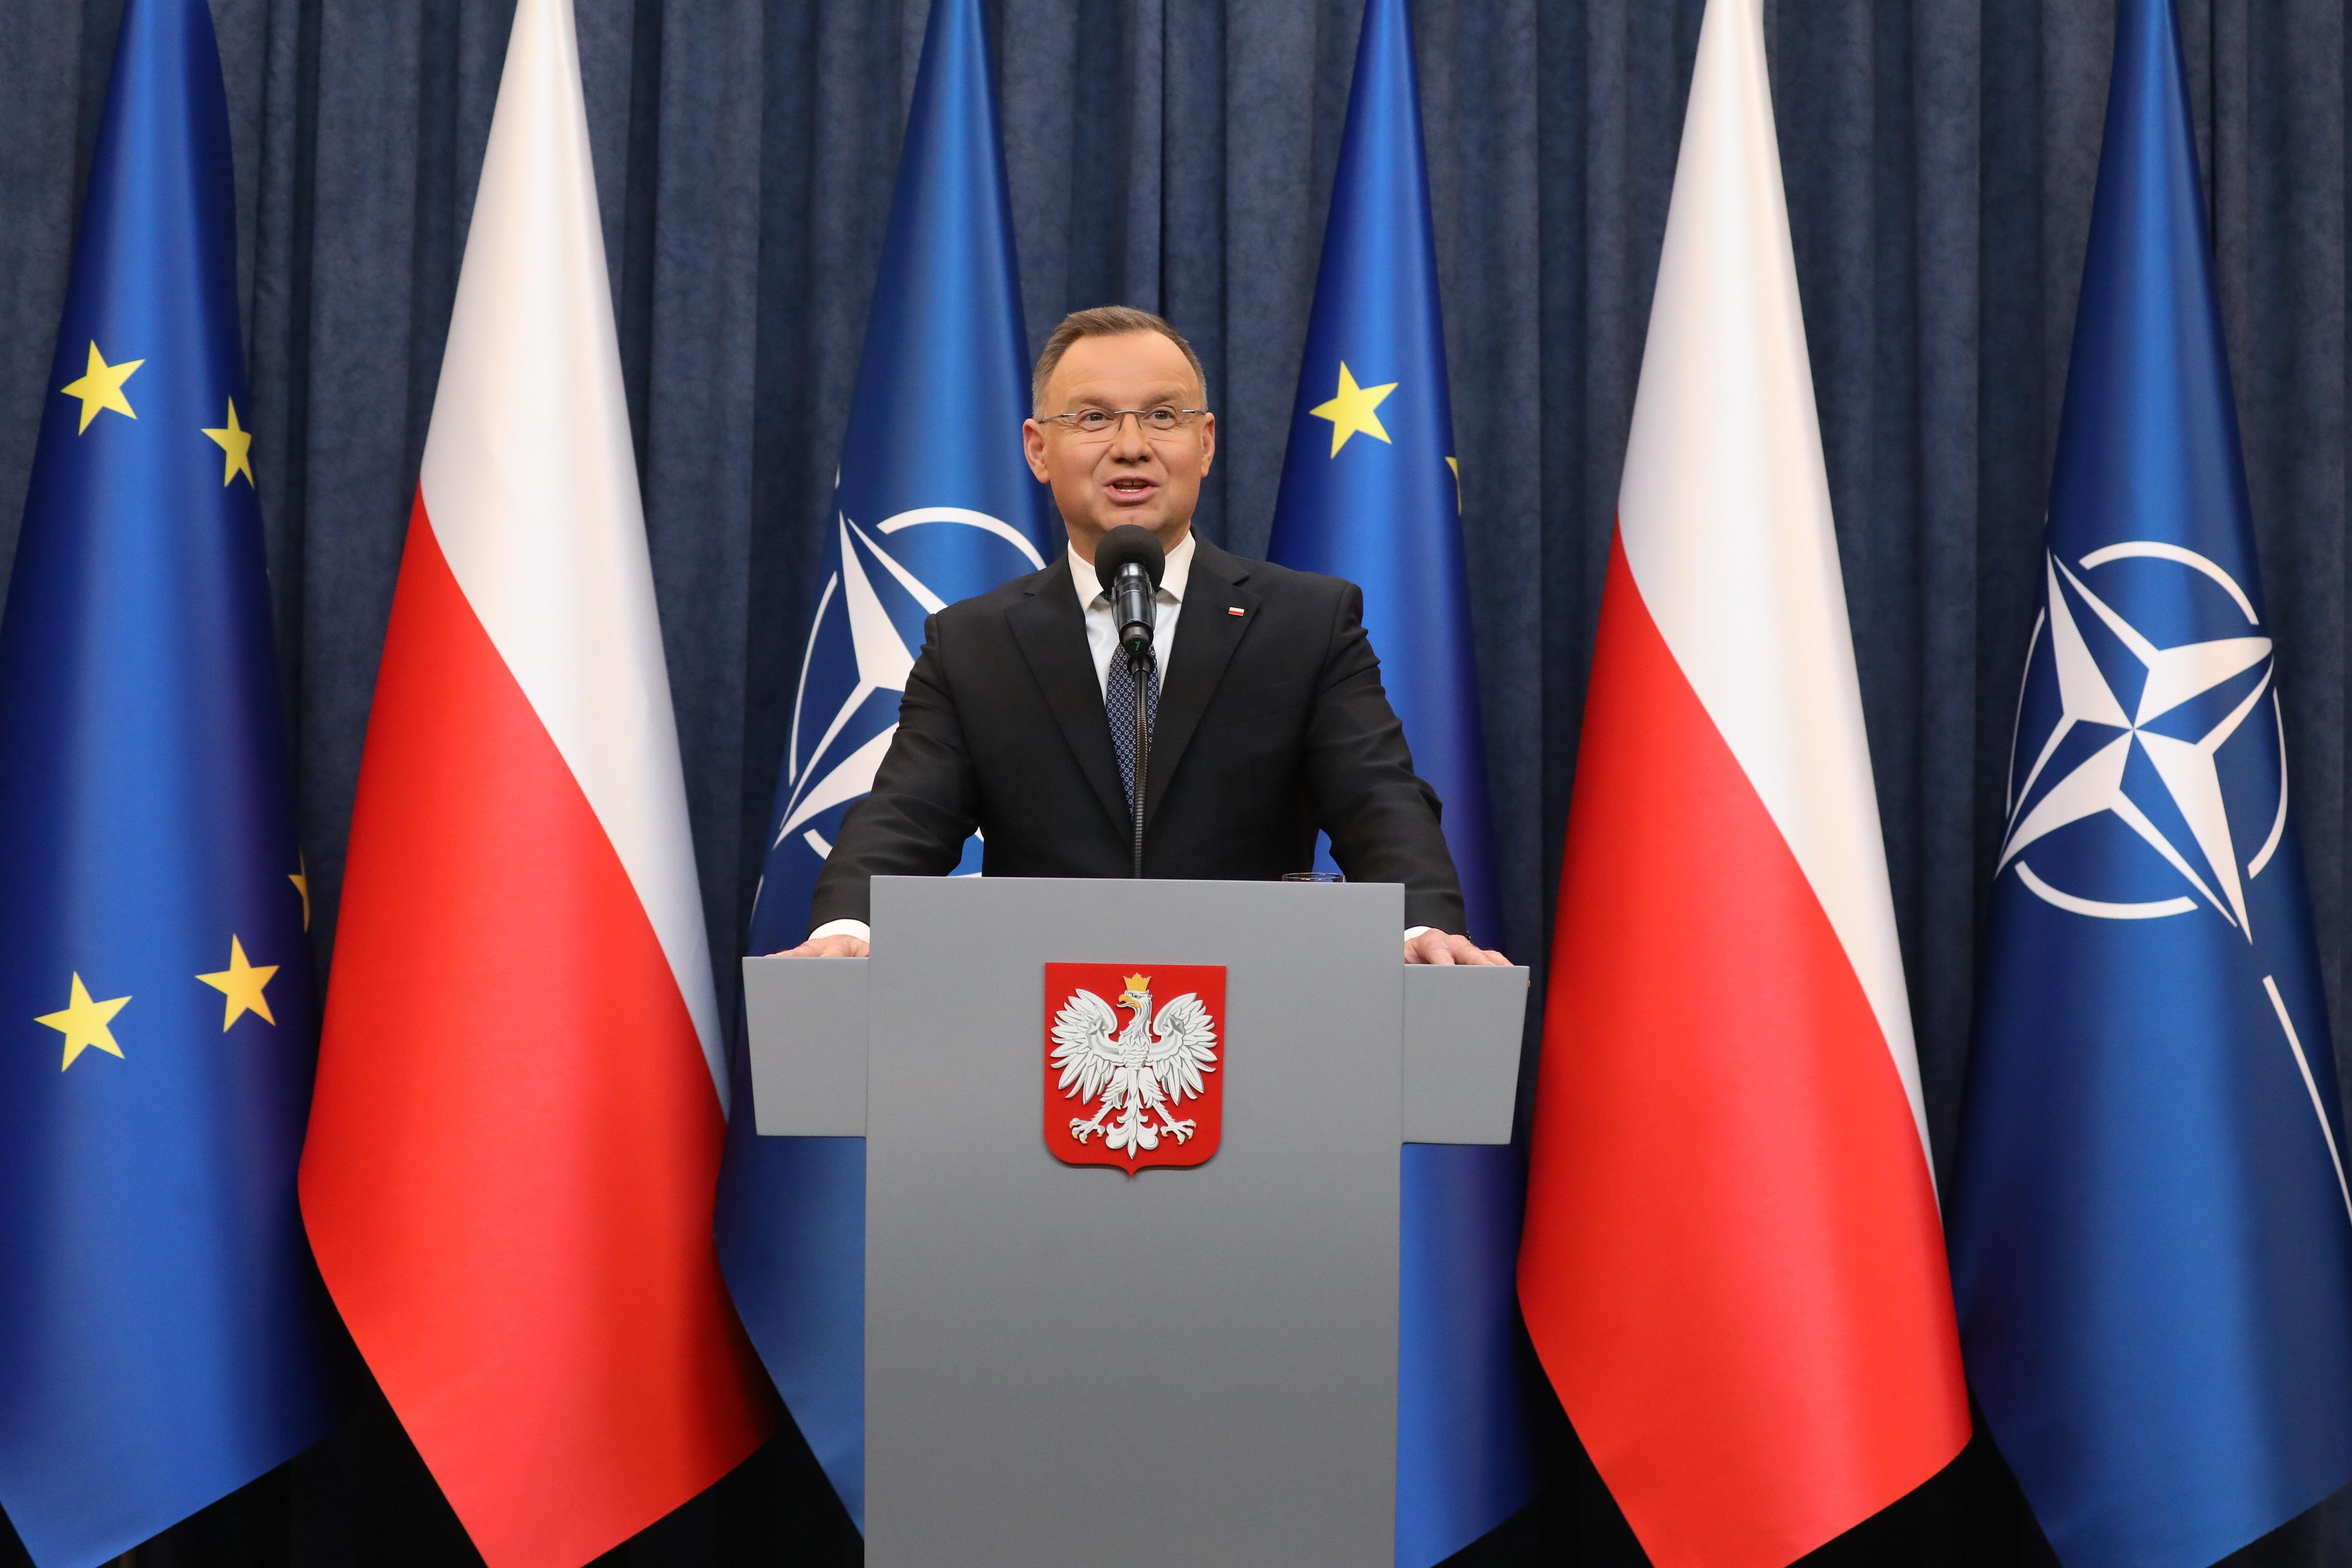 Prezydent Andrzej Duda przemawia zza mównicy z godłem Polski, za nim flagi Polski, Unii Europejskiej i NATO